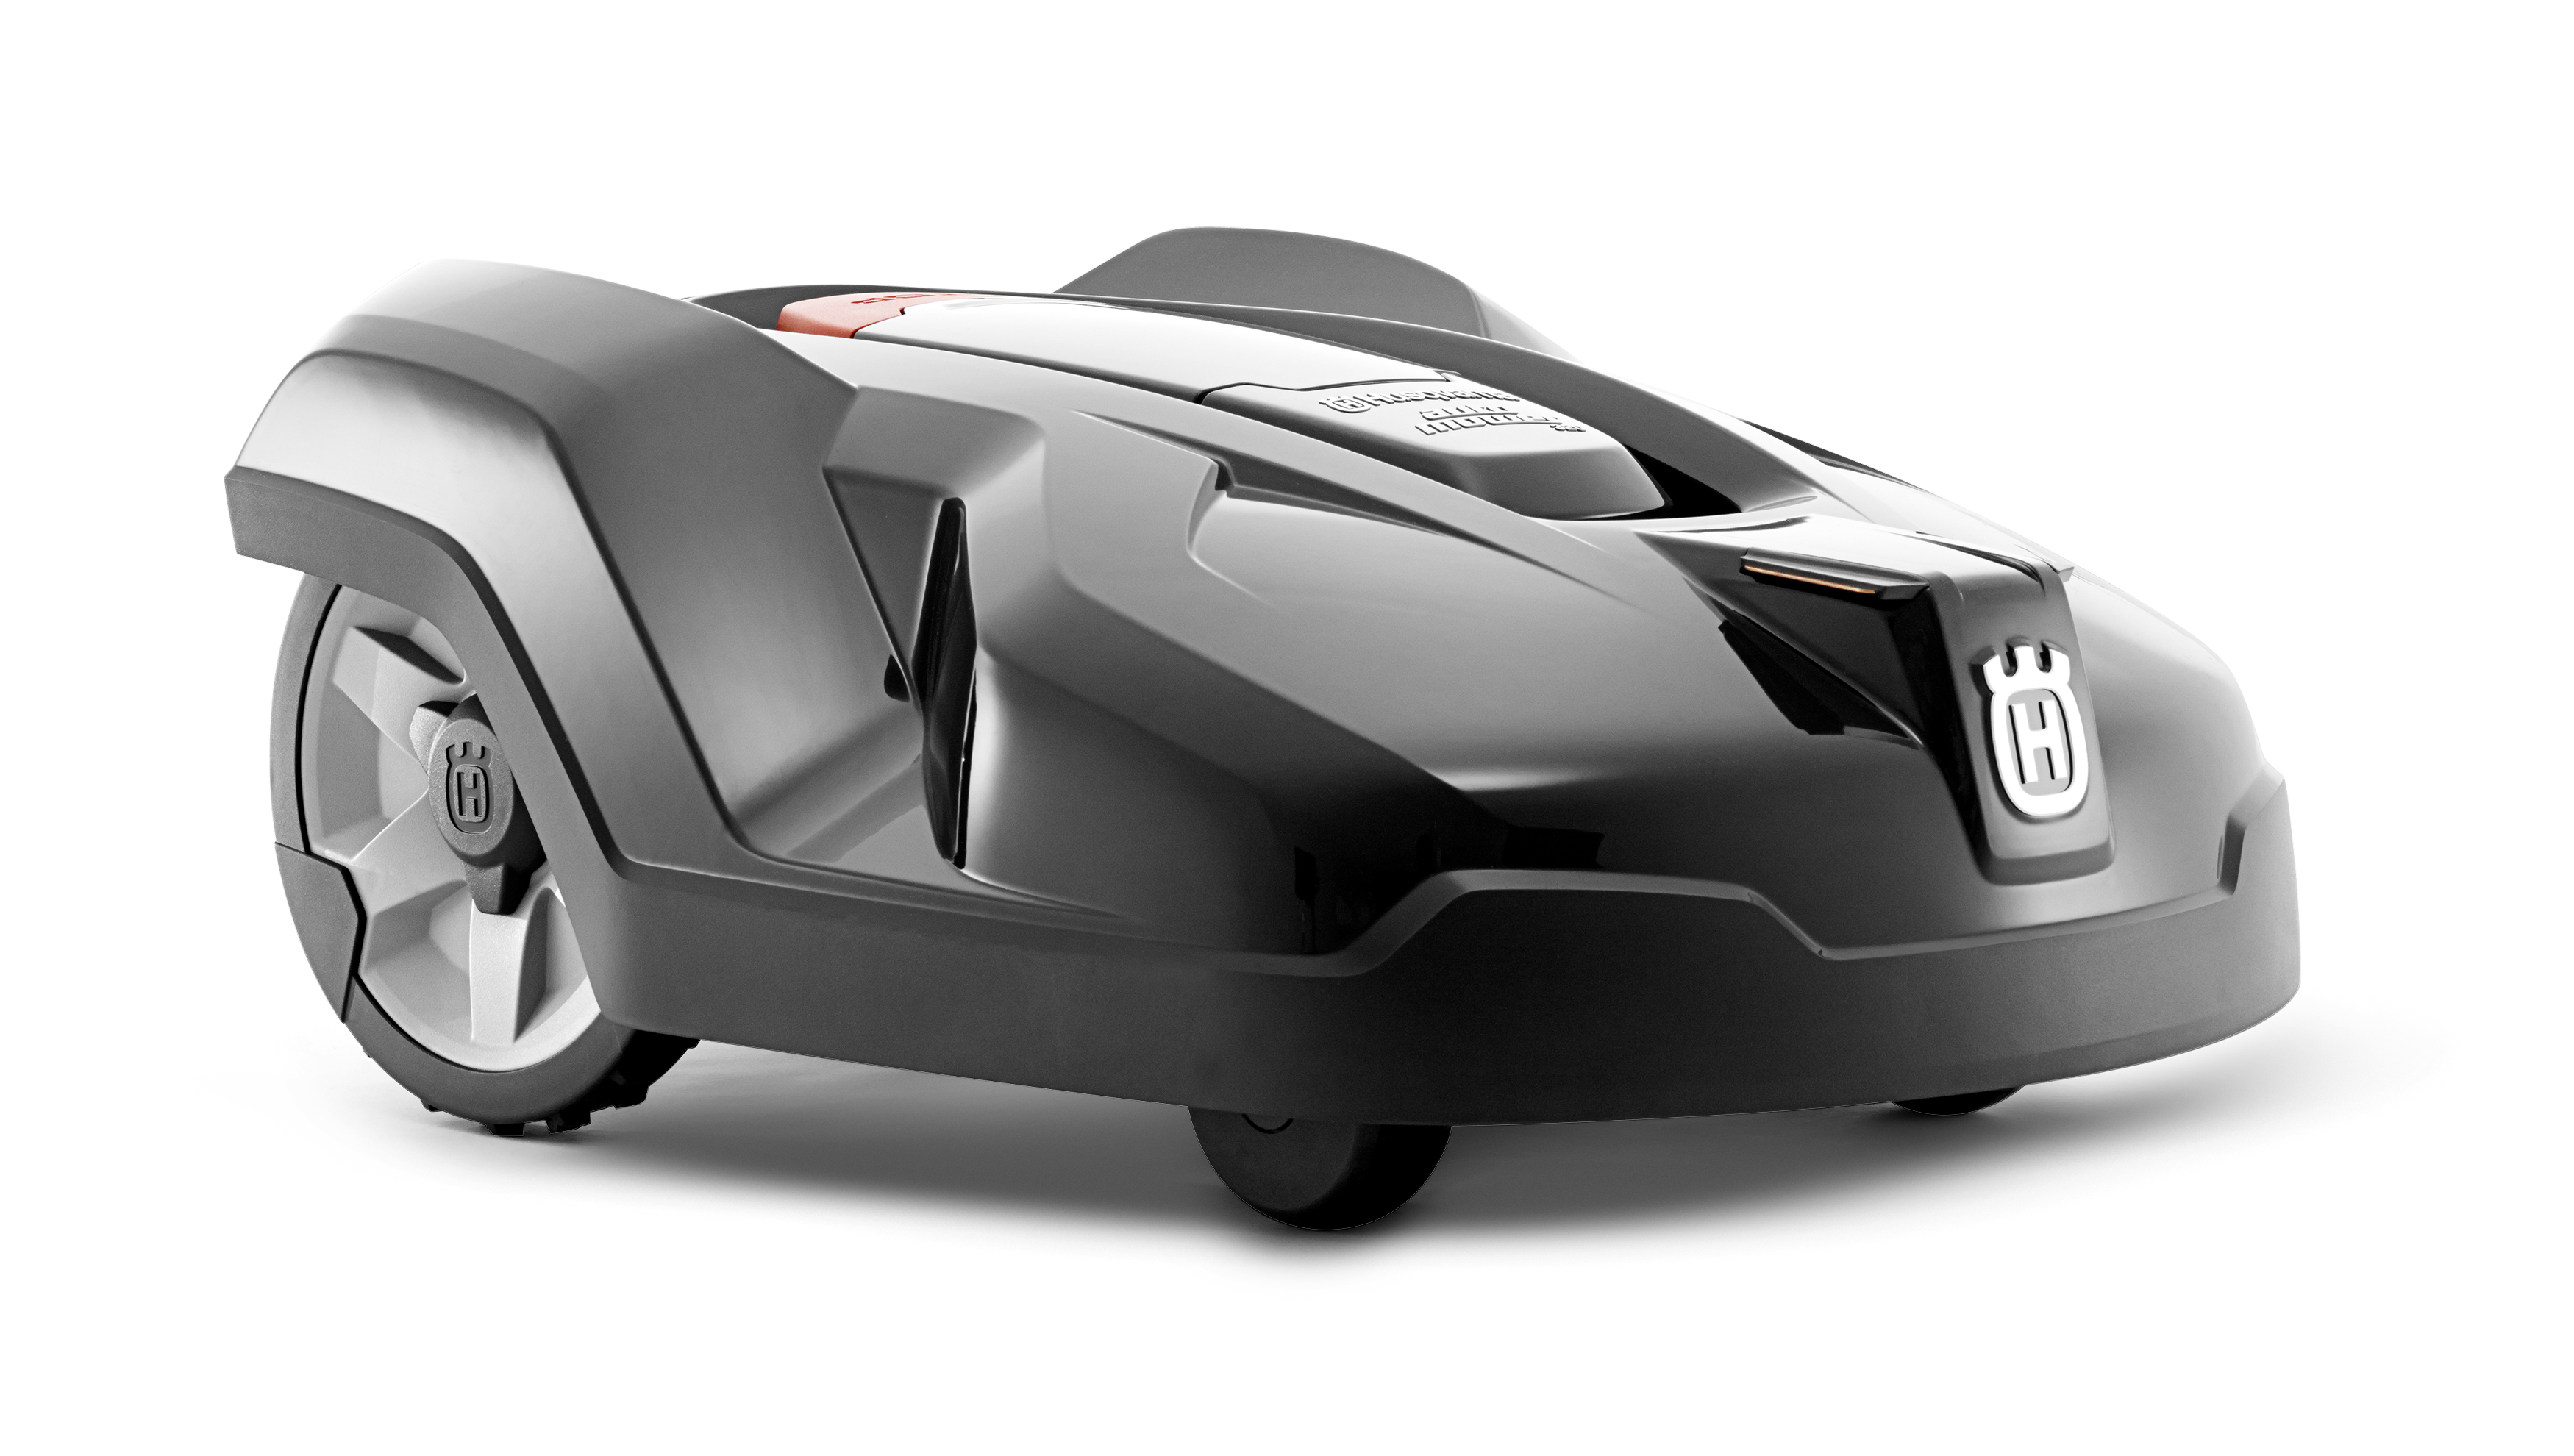 Melns Husqvarna zāles pļāvējs robots – Automower 420 modelis, skats no priekšas